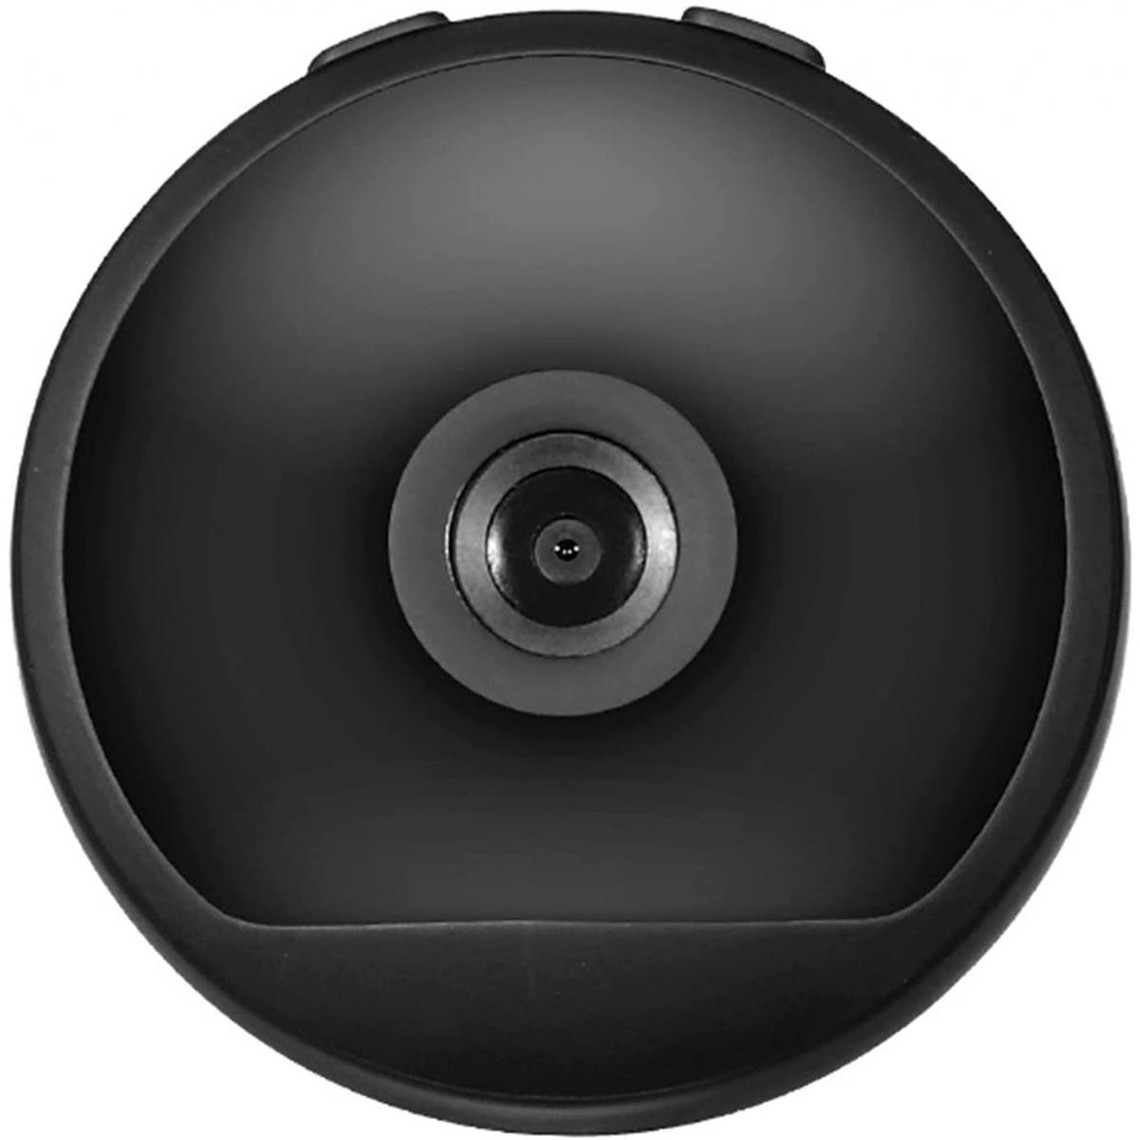 Chrono Mini caméra Espion WiFi Petit Moniteur bébé sans Fil HD 1080P caméra cachée, avec Vision Nocturne Automatique/Vision Noc